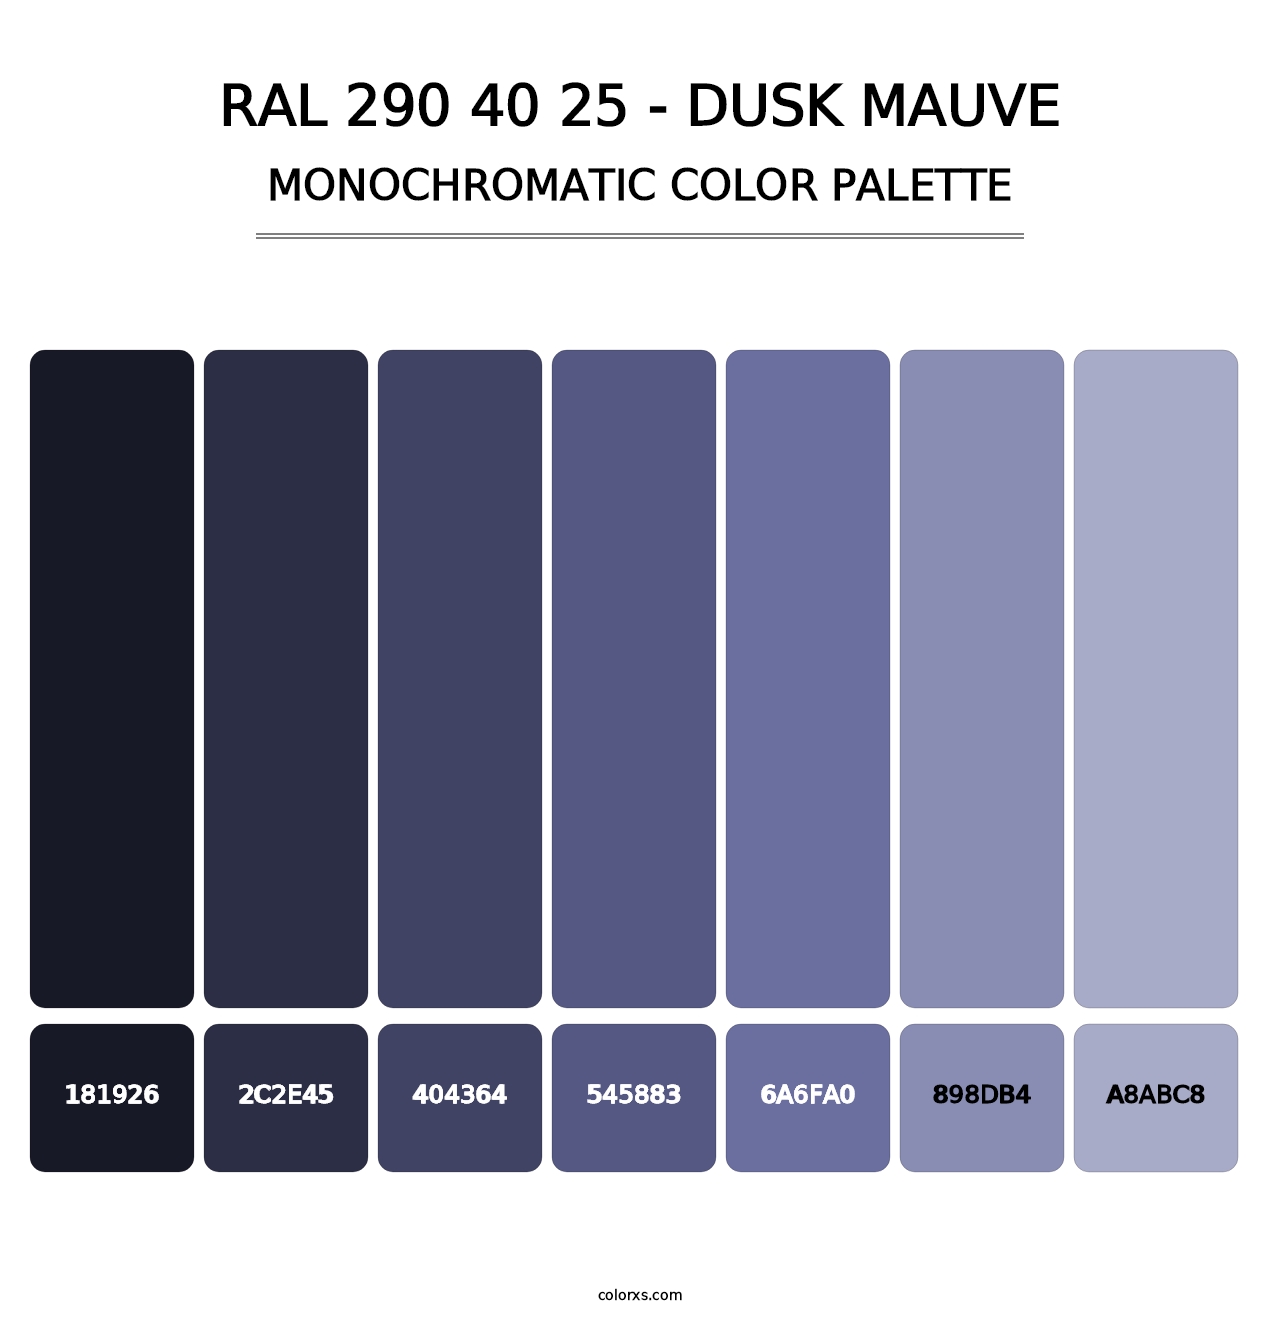 RAL 290 40 25 - Dusk Mauve - Monochromatic Color Palette